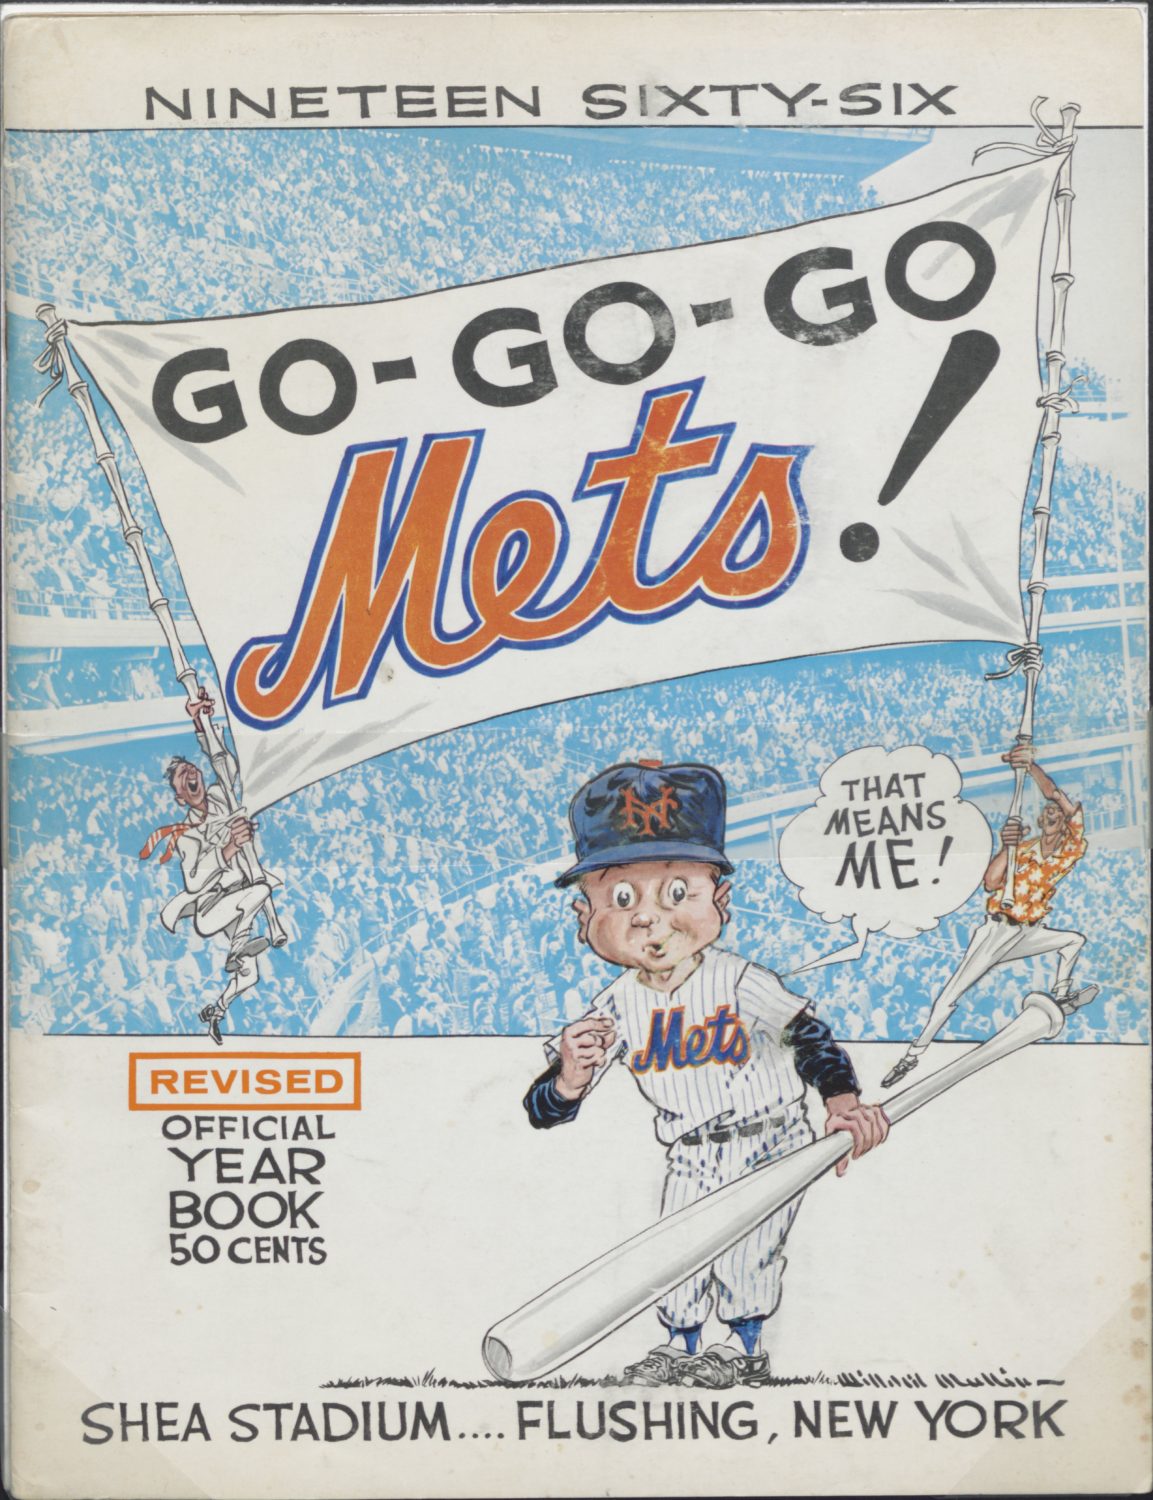 1966 New York Mets Yearbook: Go-Go-Go Mets